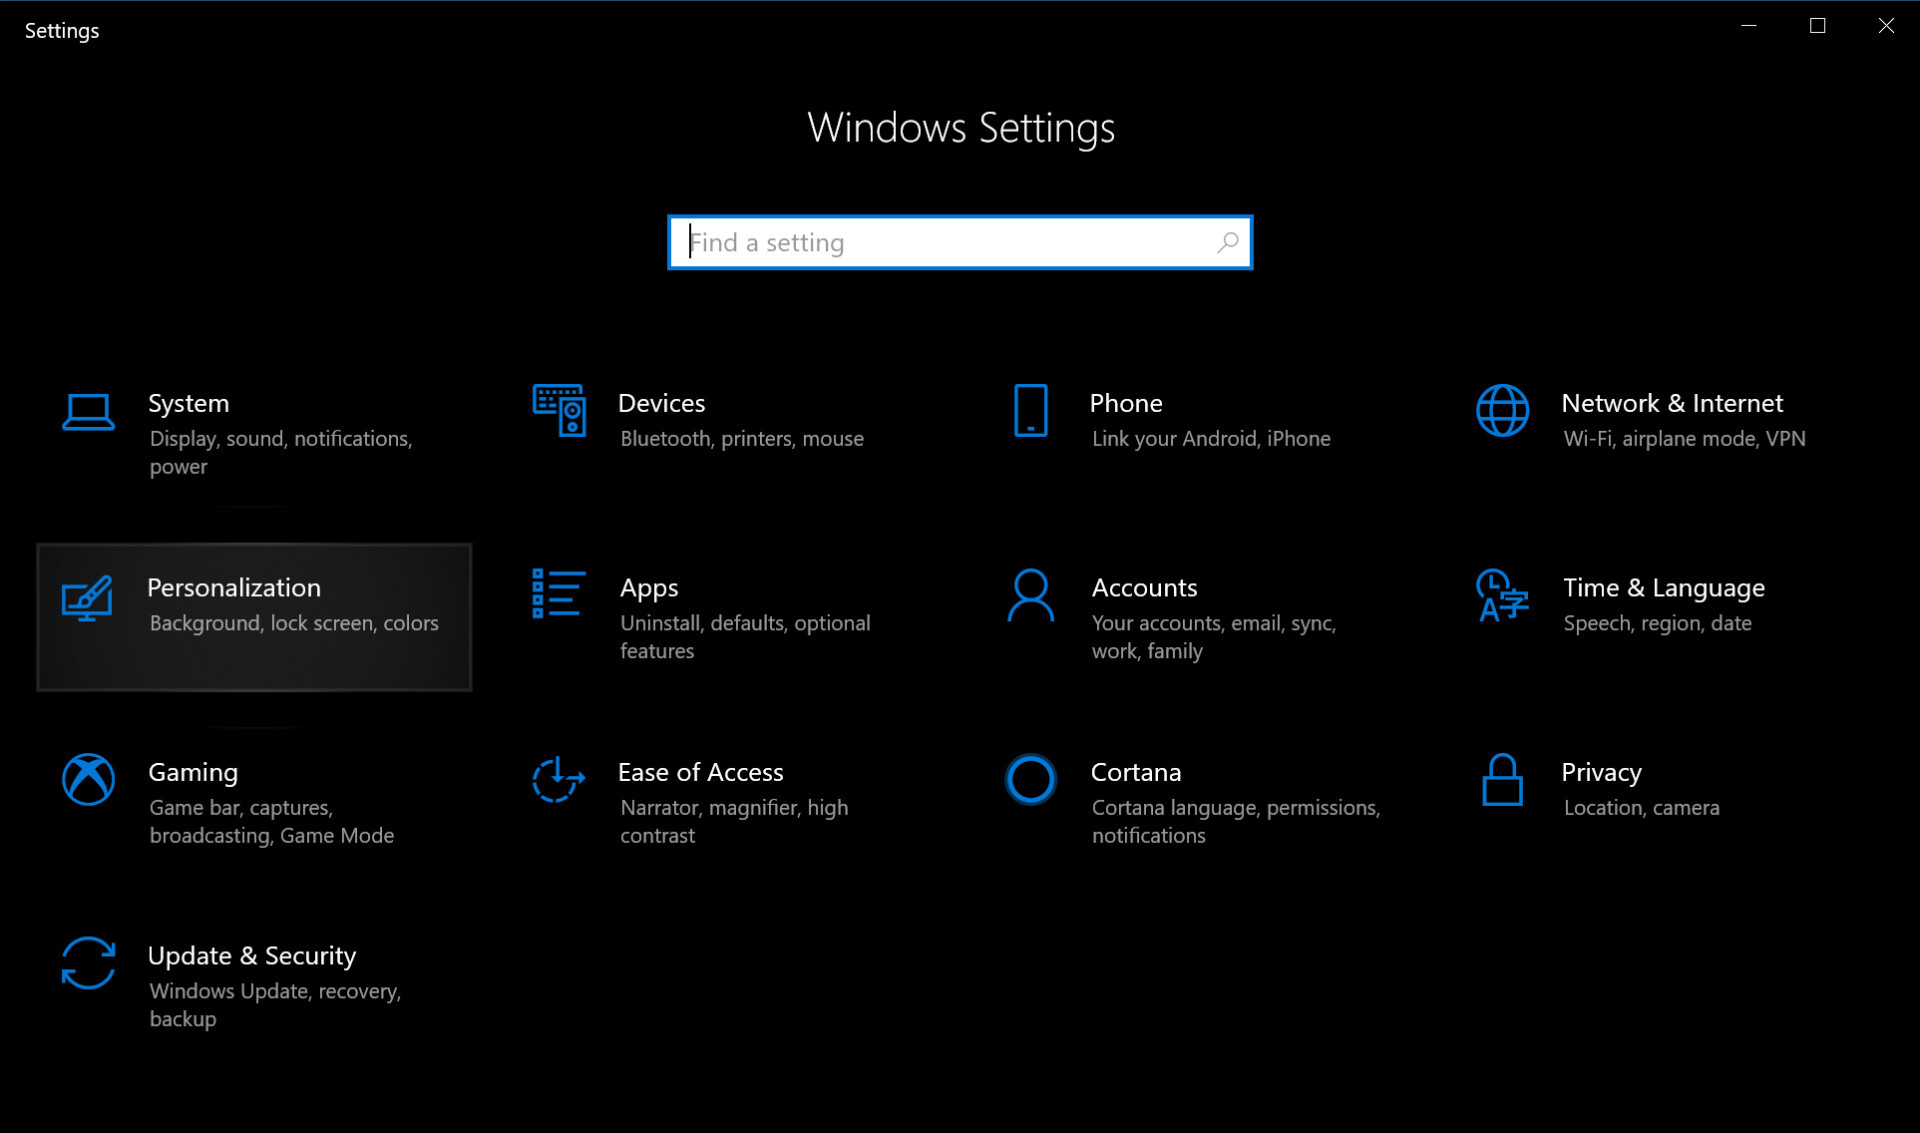 Windows 10 Settings Menu - How to enable dark mode in Windows 10